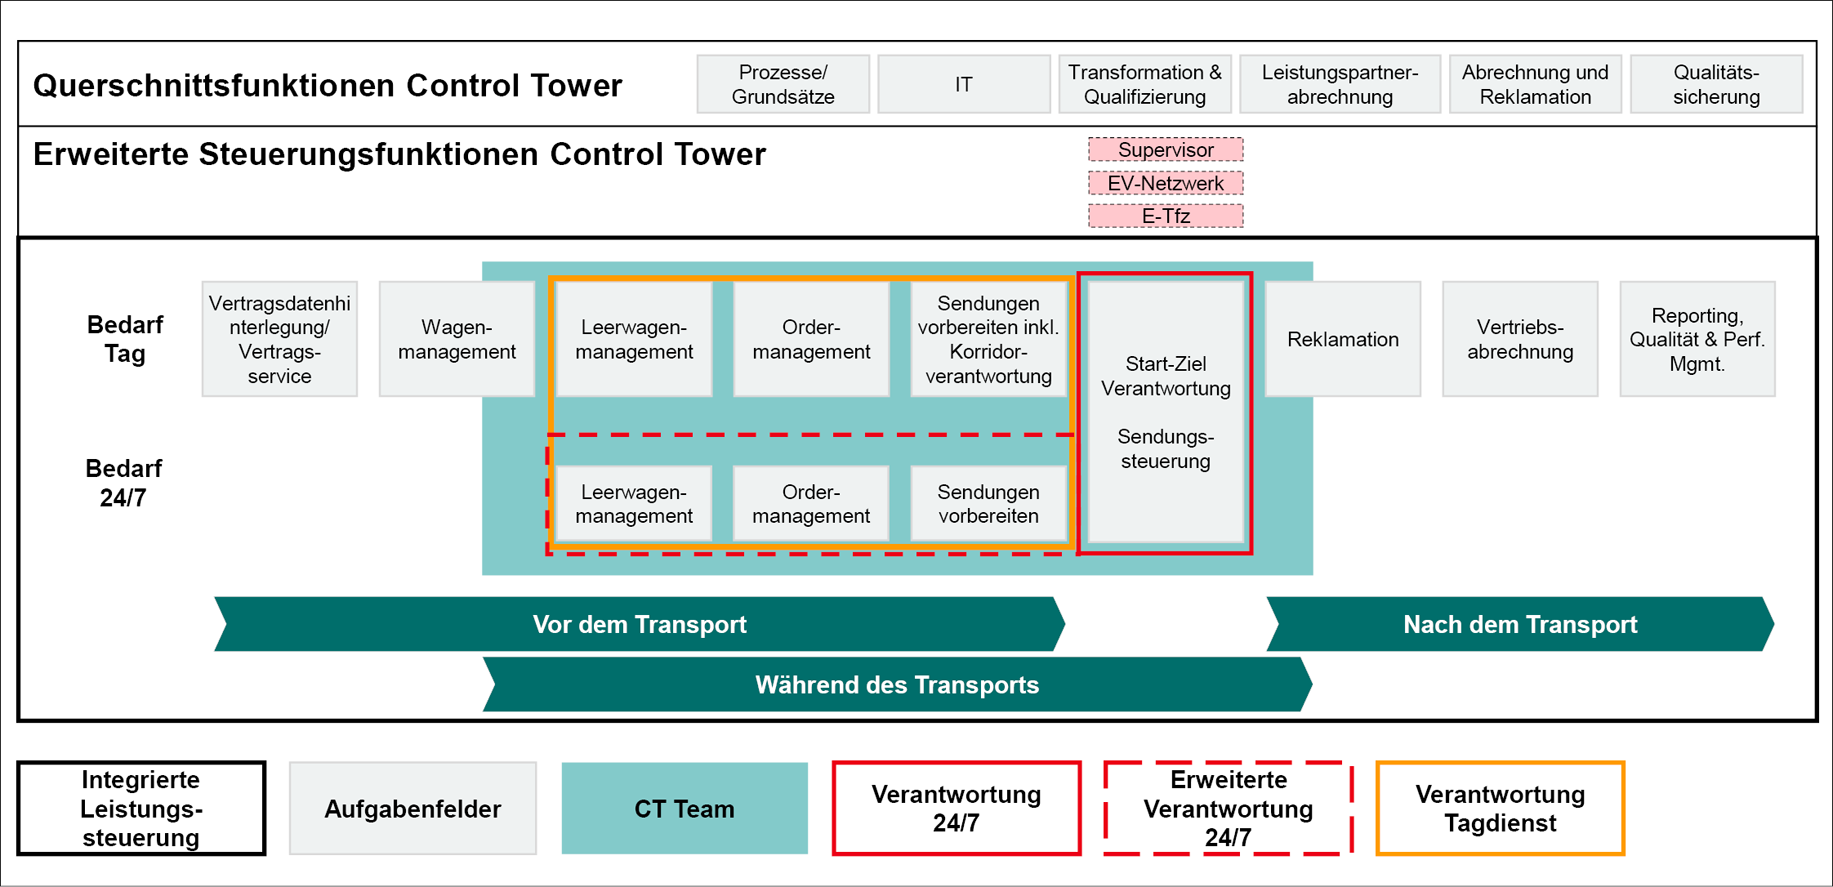 Der Control Tower vereint alle wesentlichen Aufgabenfelder einer integrierten Leistungssteuerung in einer Einheit